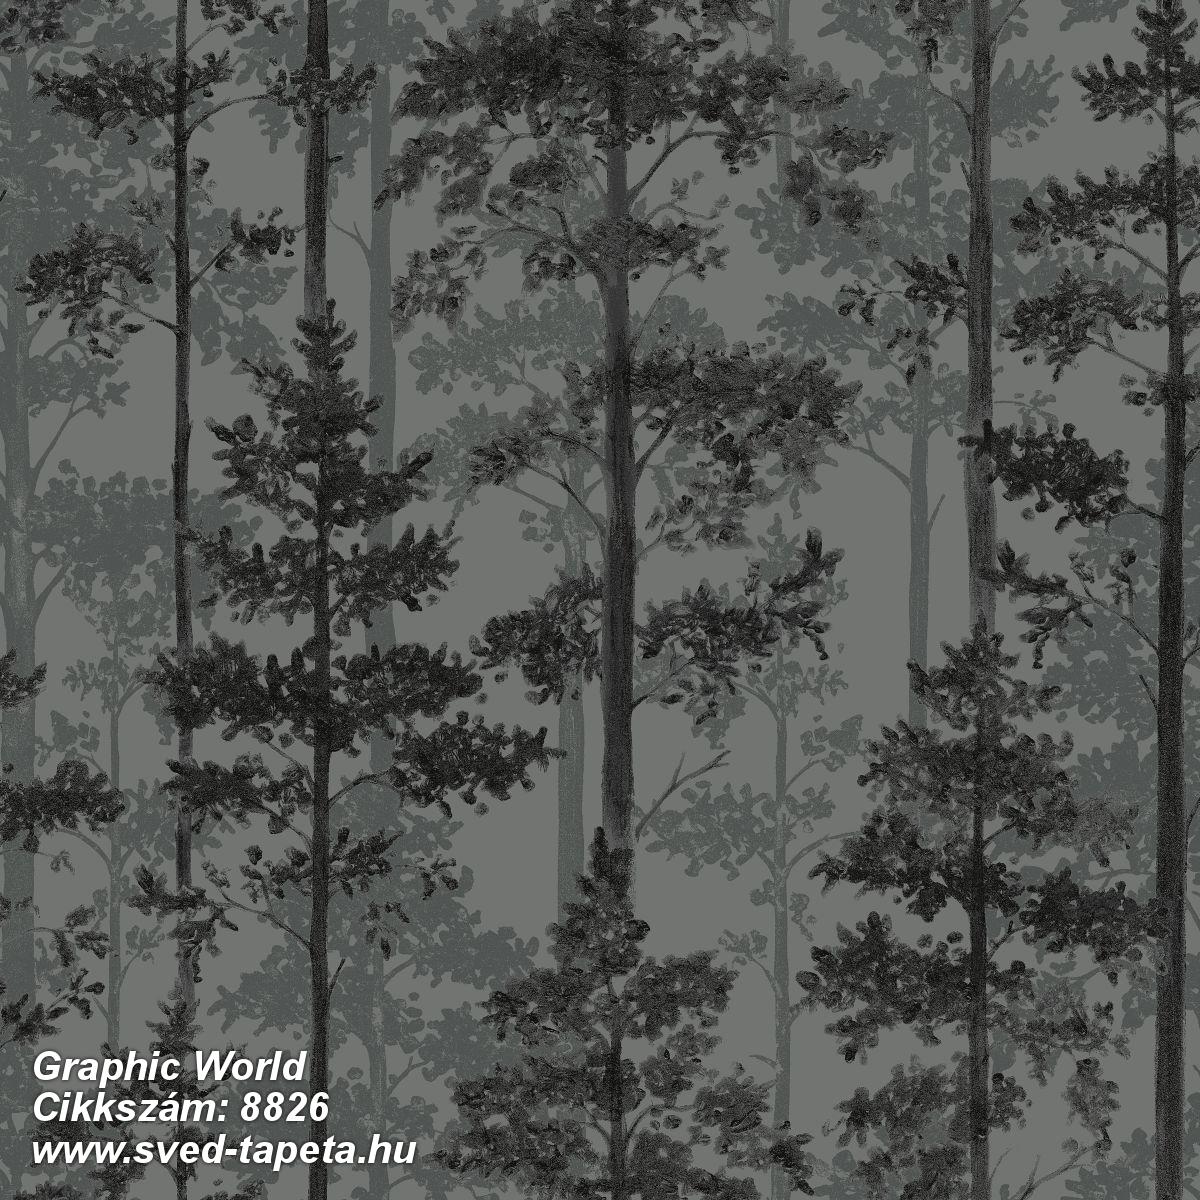 Graphic World 8826 cikkszámú svéd ECOgyártmányú designtapéta